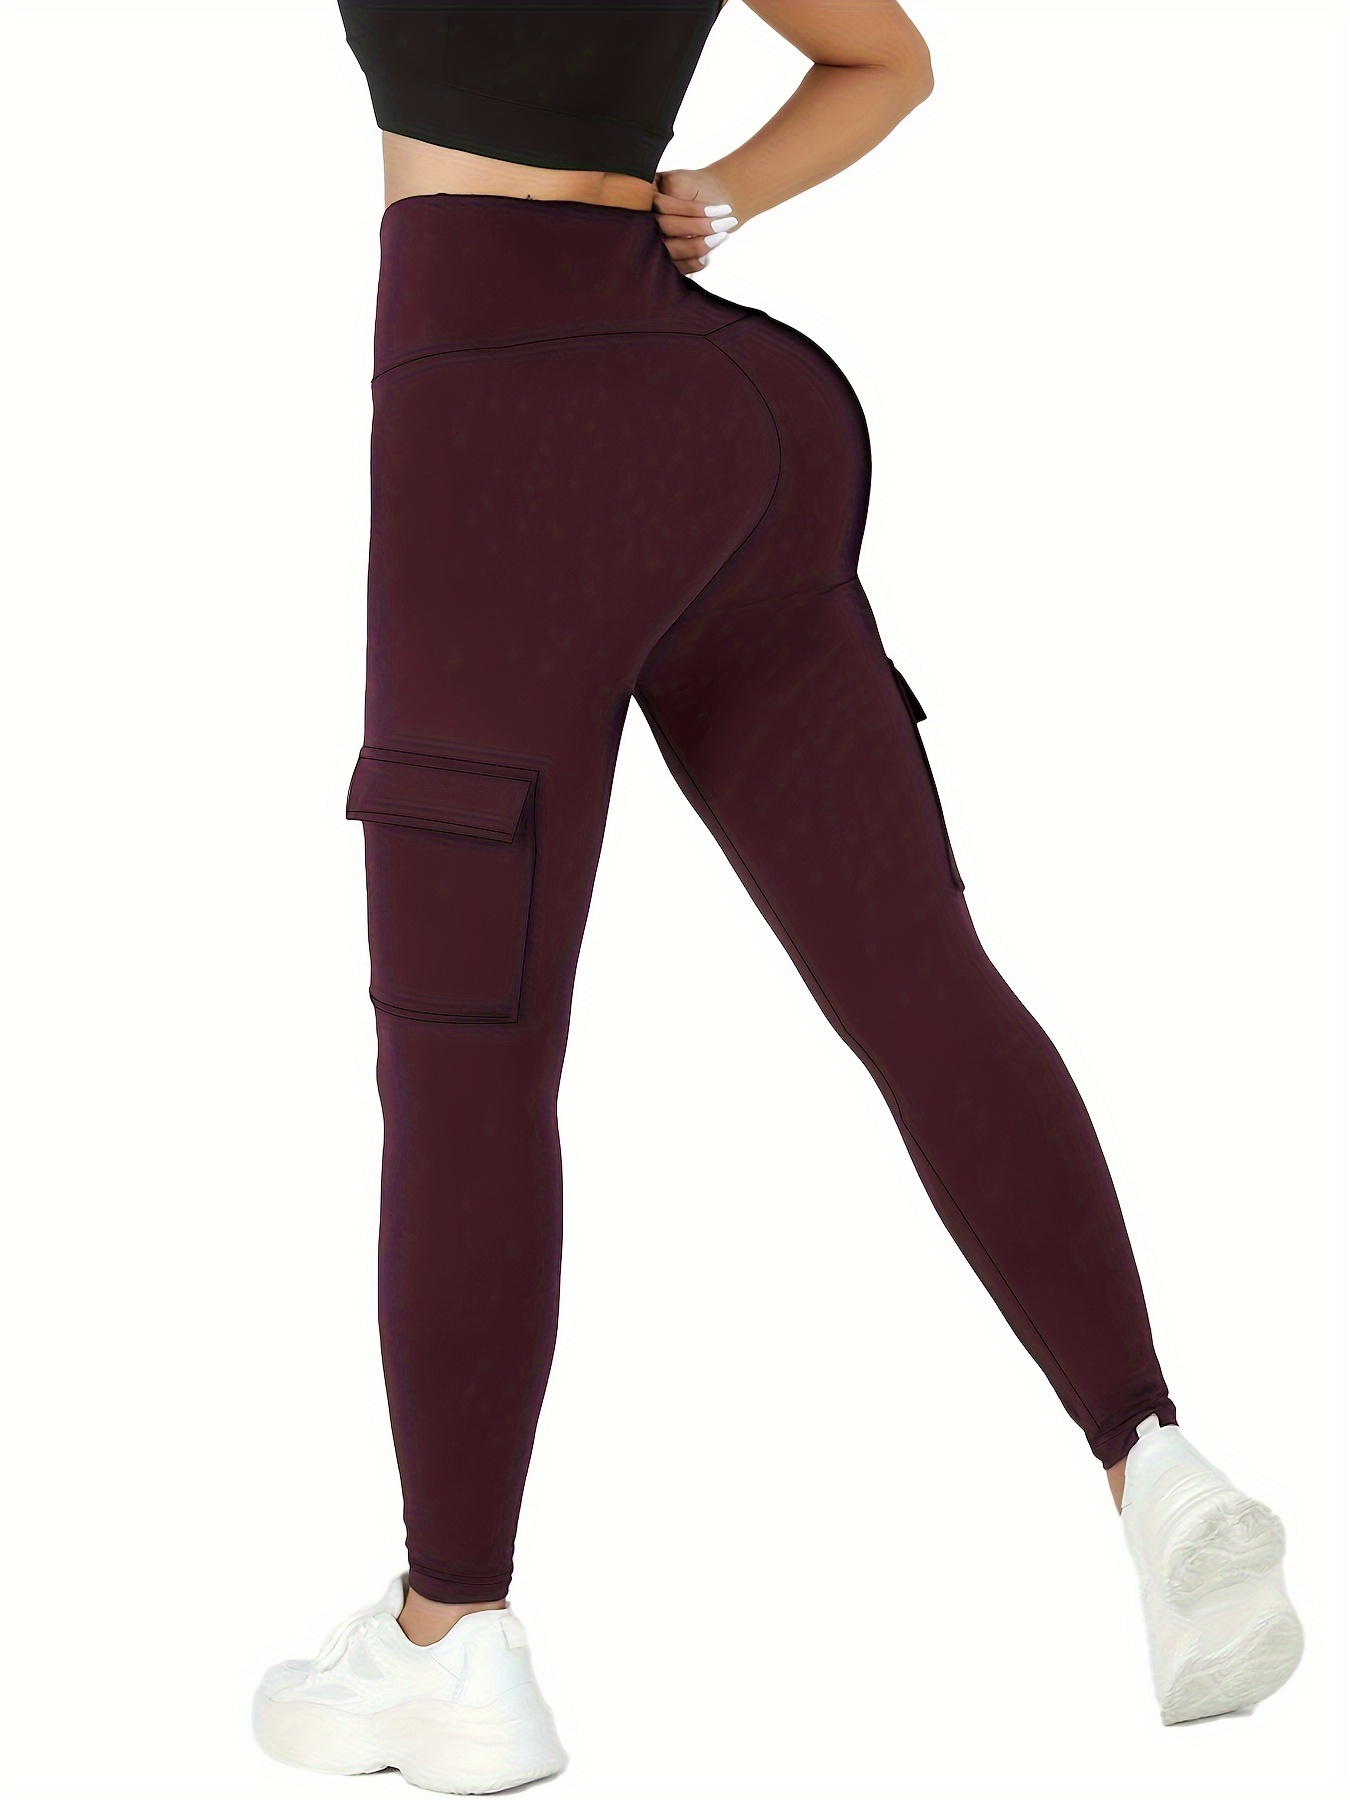  Cargo Leggings for Women Pocket High Waist Yoga Pants